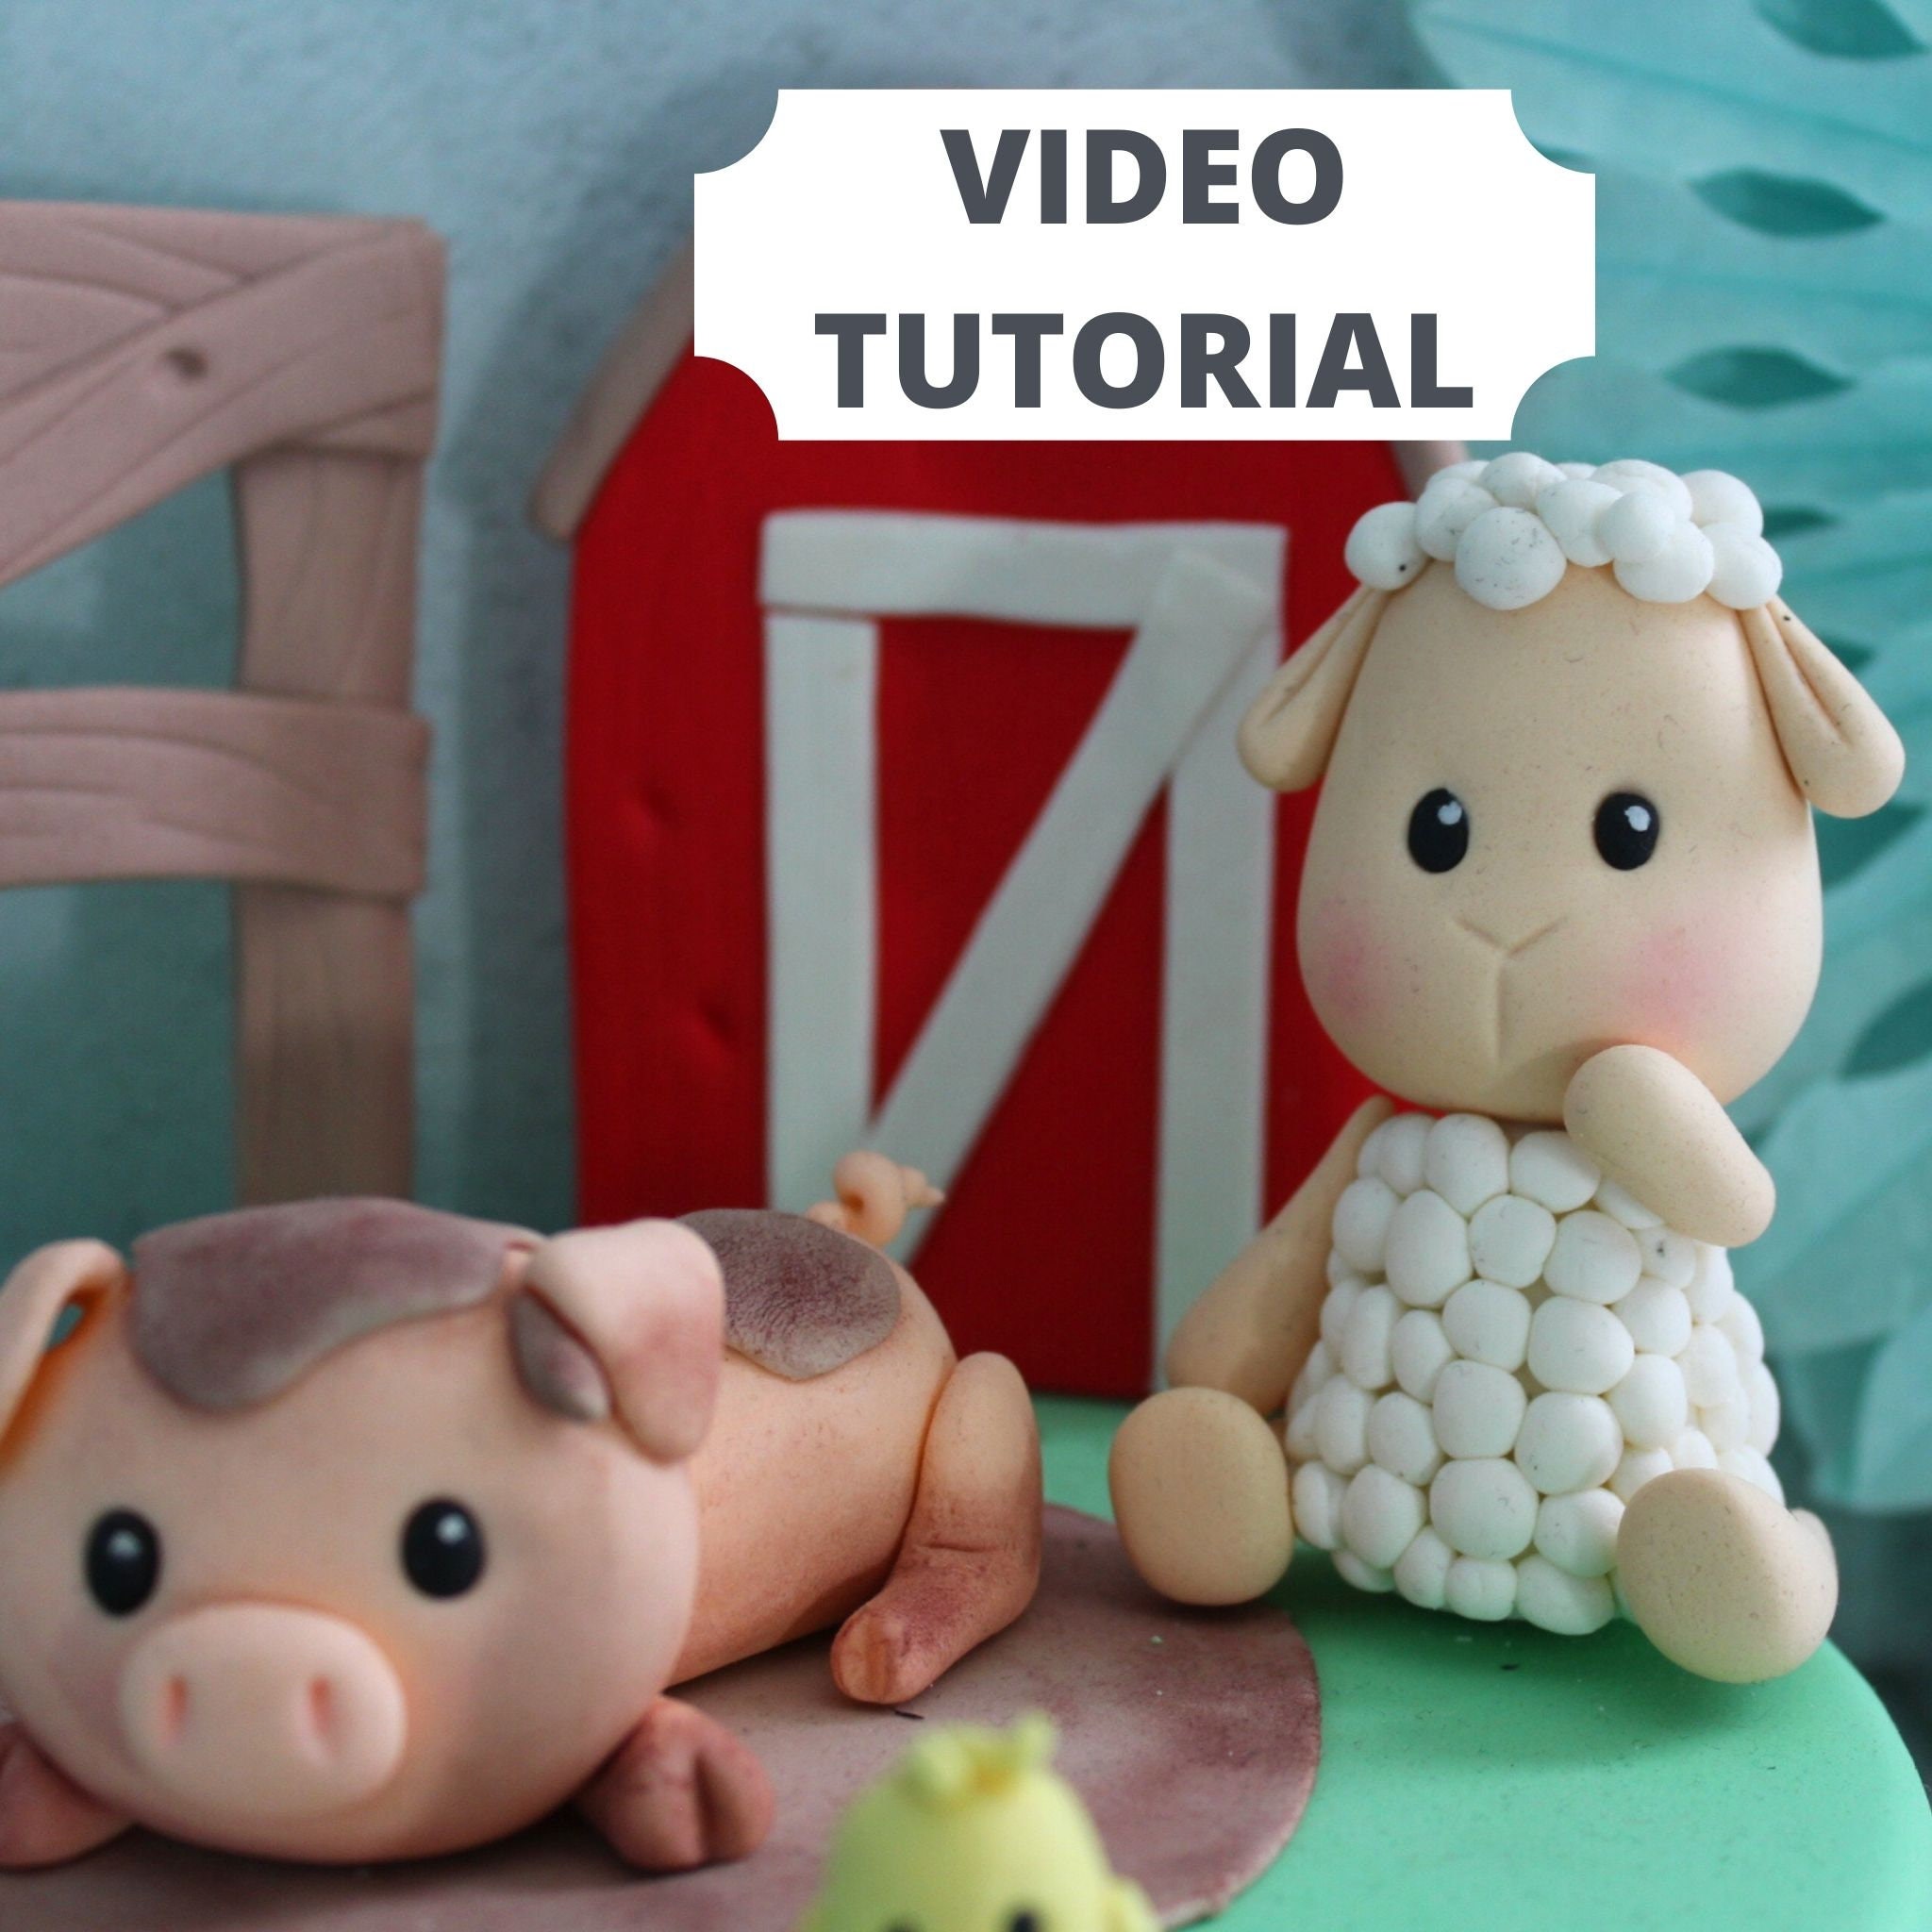 How To Make Fondant Pig Cake Topper - Tutorial 